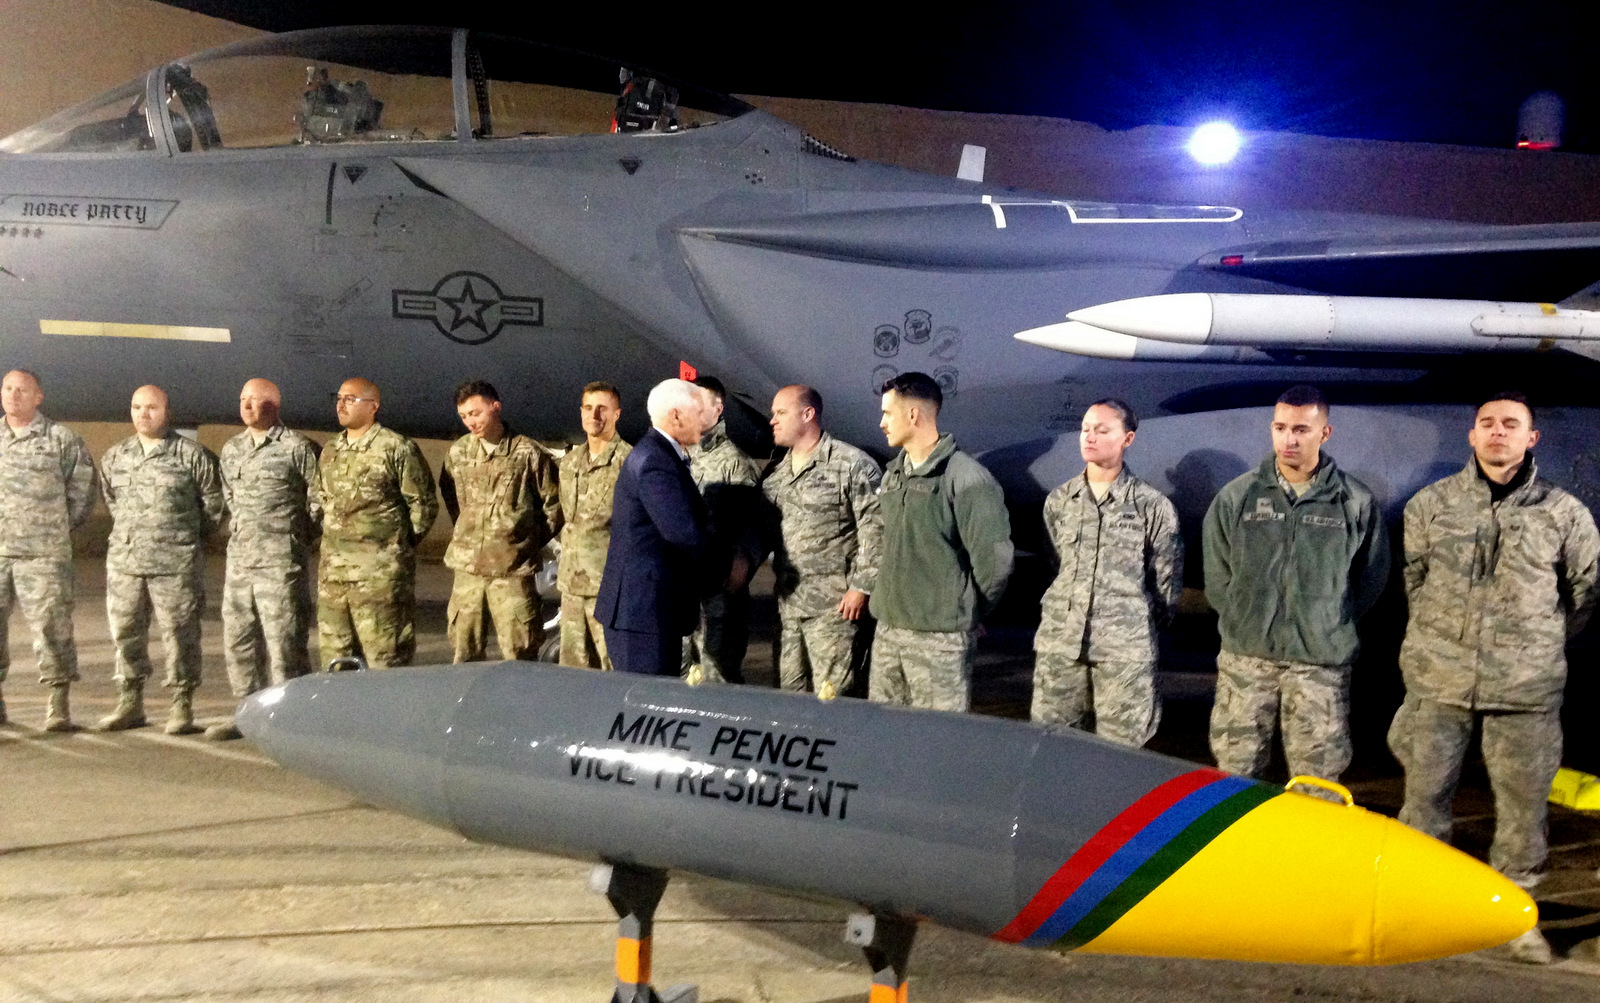 El vicepresidente Mike Pence saluda a las tropas estadounidenses el 21 de enero de 2018, cerca de la frontera siria. (AP / Ken Thomas)